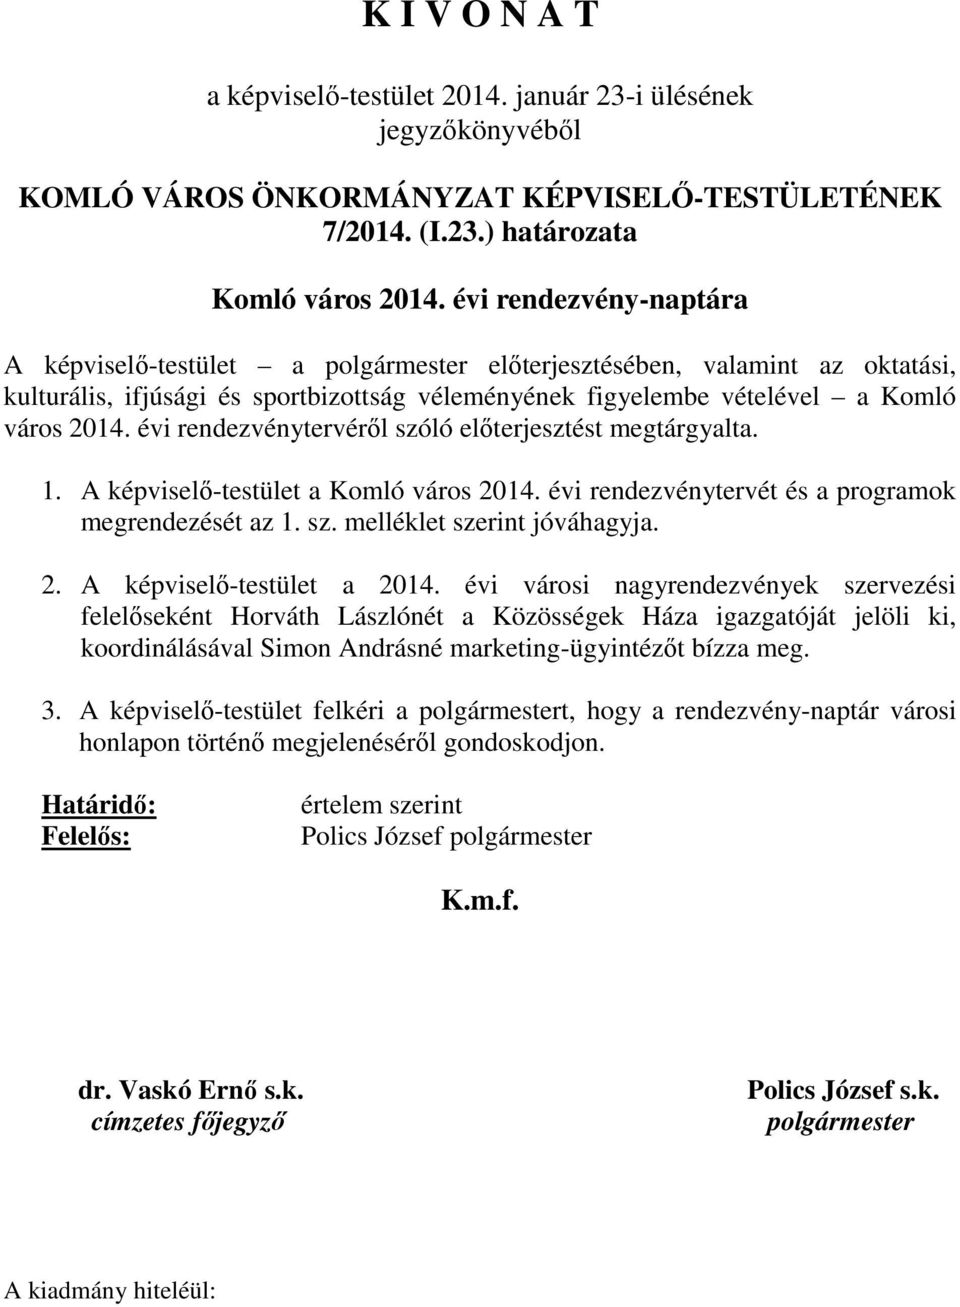 évi rendezvénytervéről szóló előterjesztést megtárgyalta. 1. A képviselő-testület a Komló város 2014. évi rendezvénytervét és a programok megrendezését az 1. sz. melléklet szerint jóváhagyja. 2. A képviselő-testület a 2014.